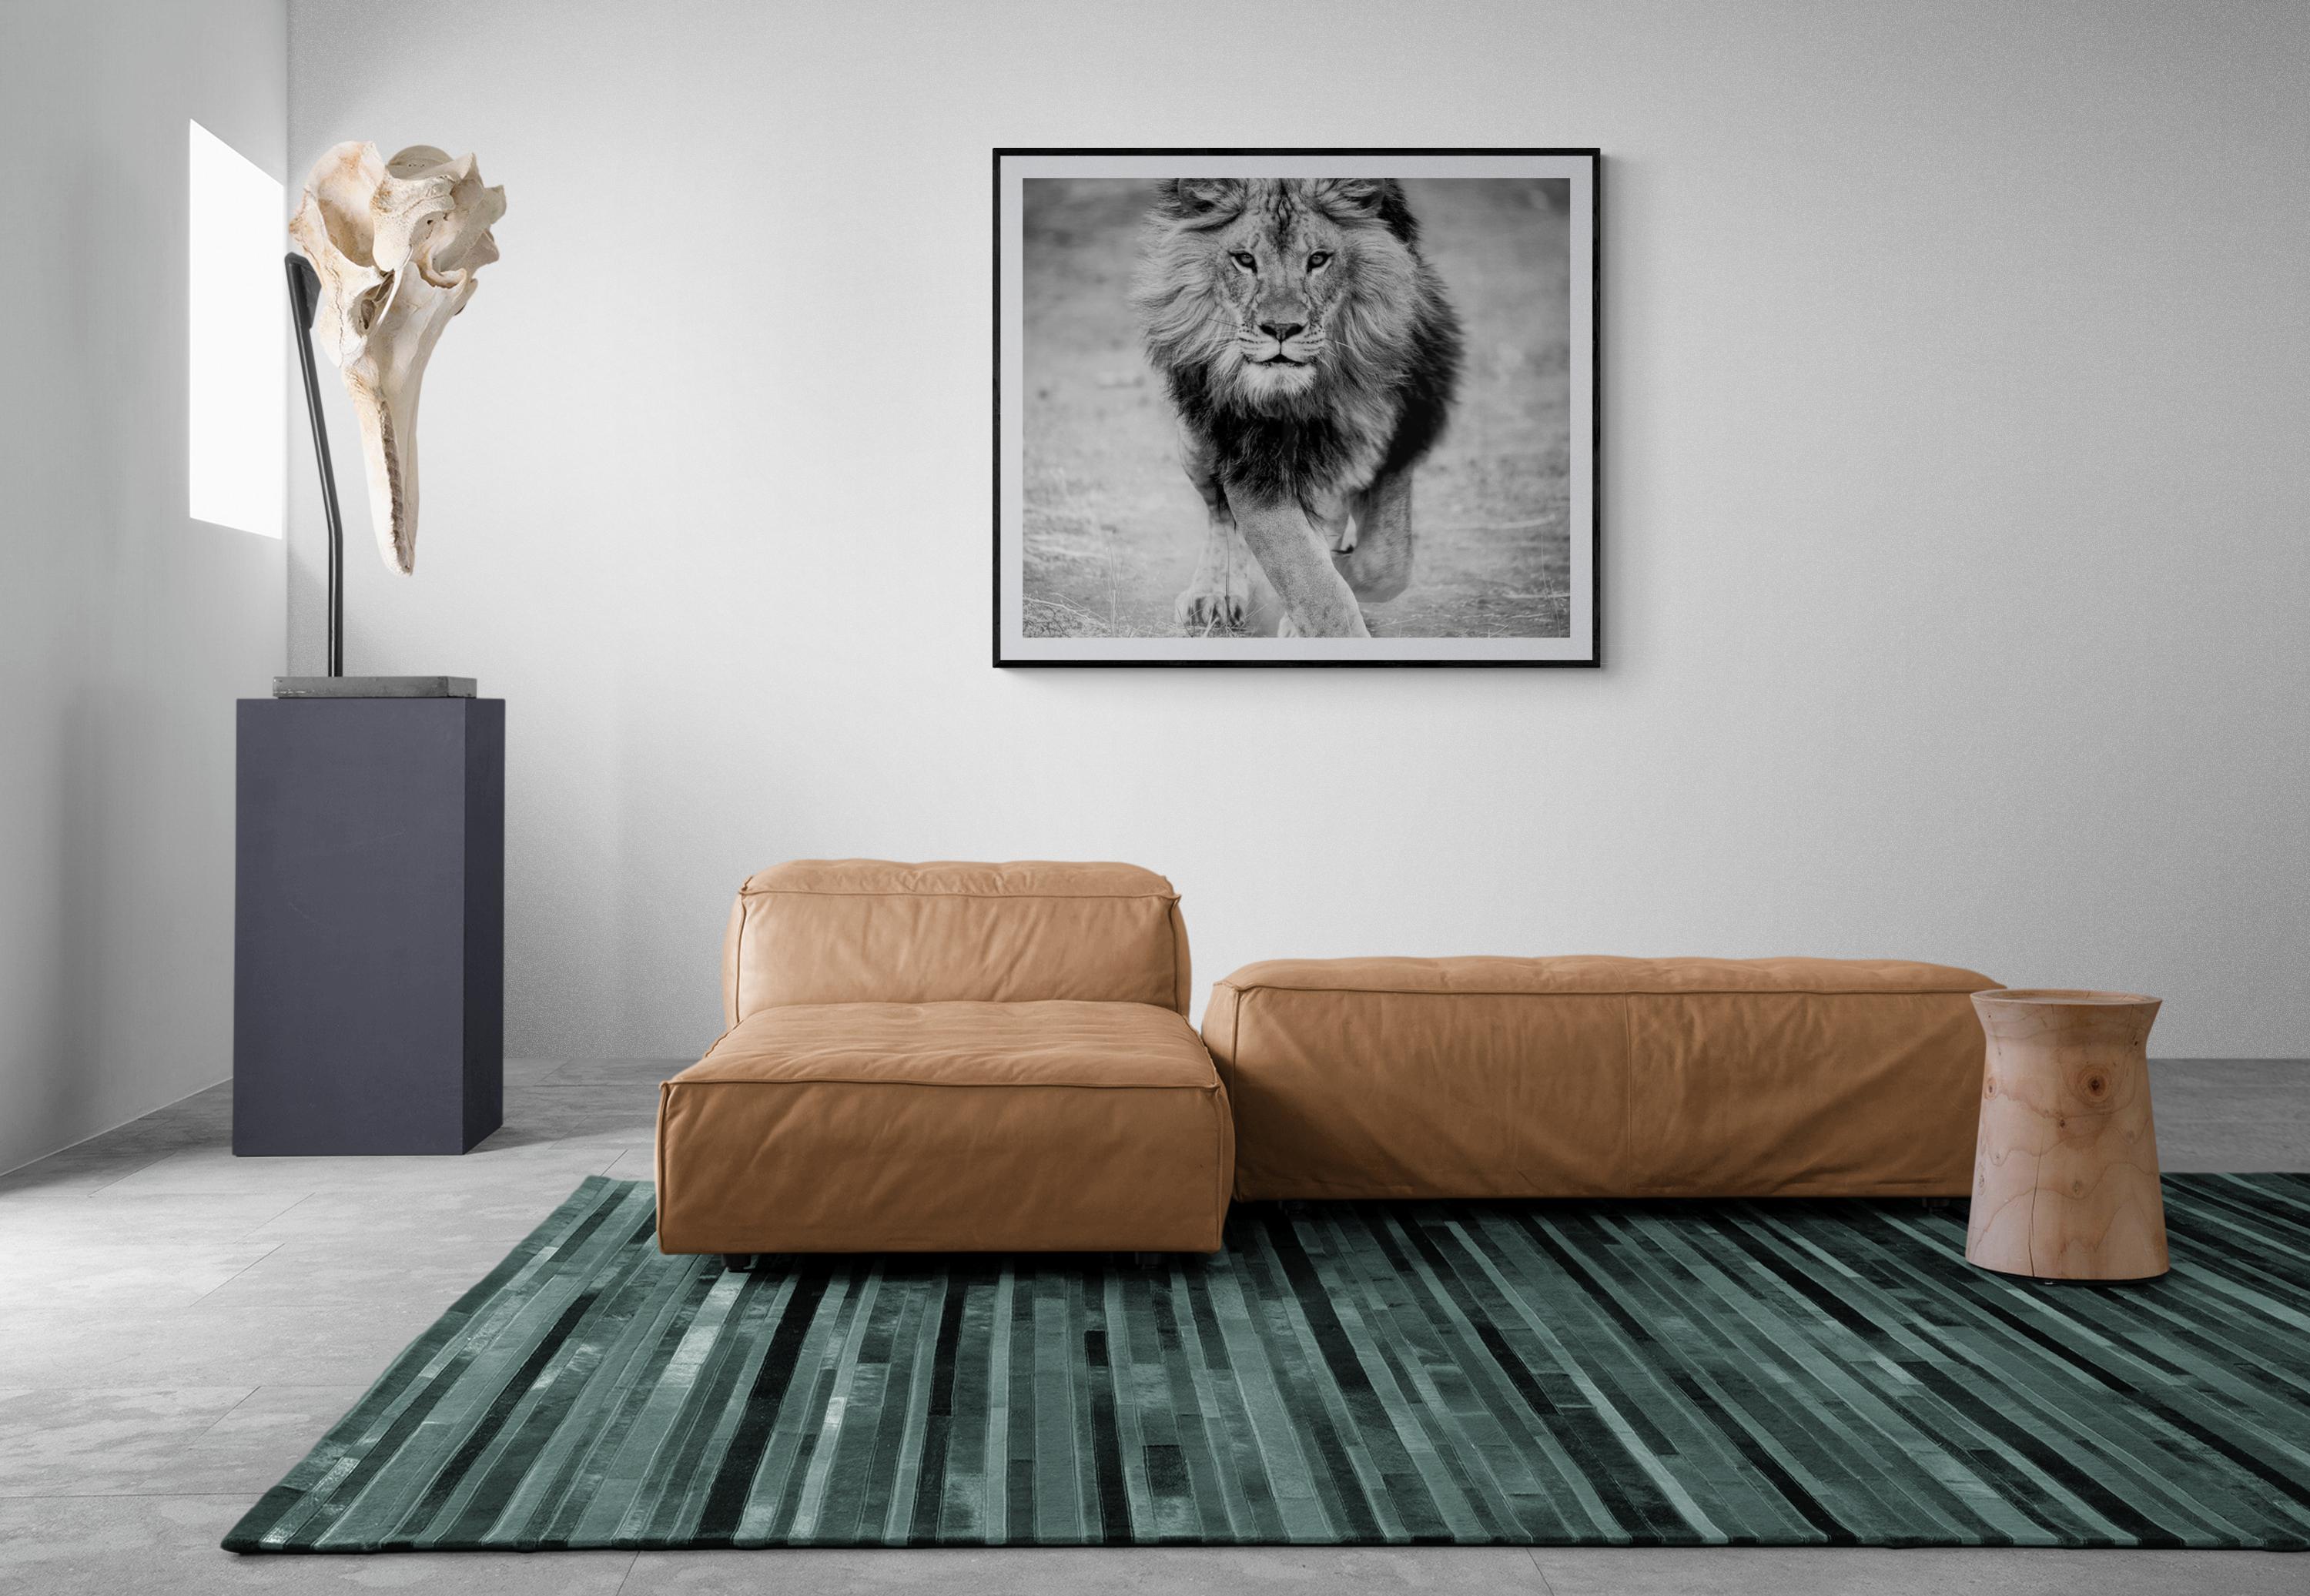 Dies ist eine zeitgenössische Fotografie eines afrikanischen Löwen. 
Gedruckt auf archivtauglichem Lusterpapier mit Archivtinten
UV-beschichtet

Einrahmung verfügbar. Erkundigen Sie sich nach den Preisen.  

 Shane Russeck hat sich den Ruf erworben,